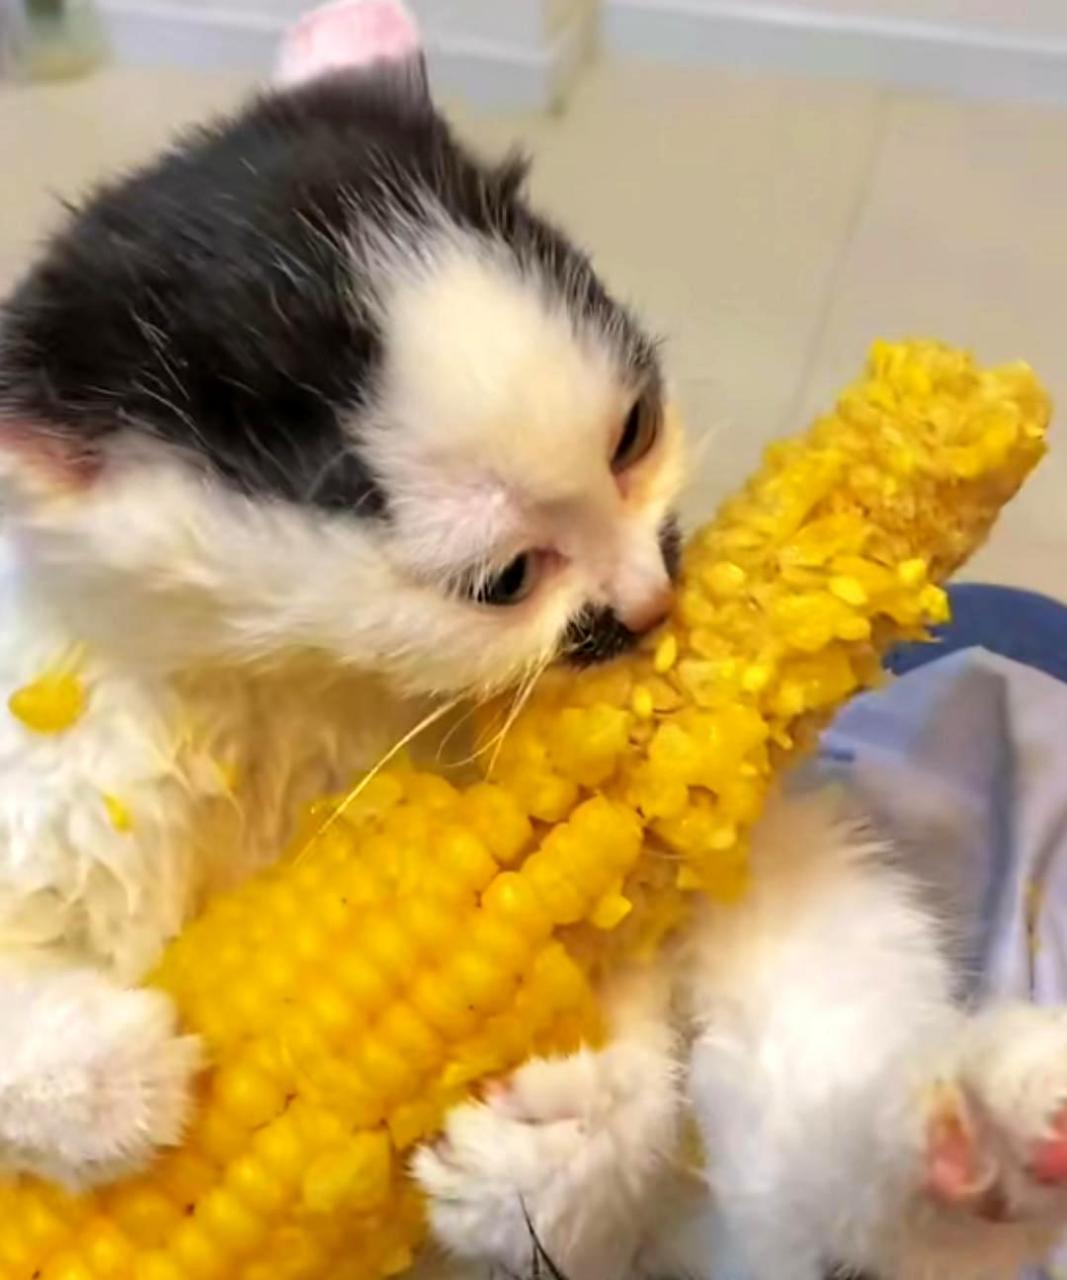 小猫咪爱啃玉米,让人垂涎欲滴!